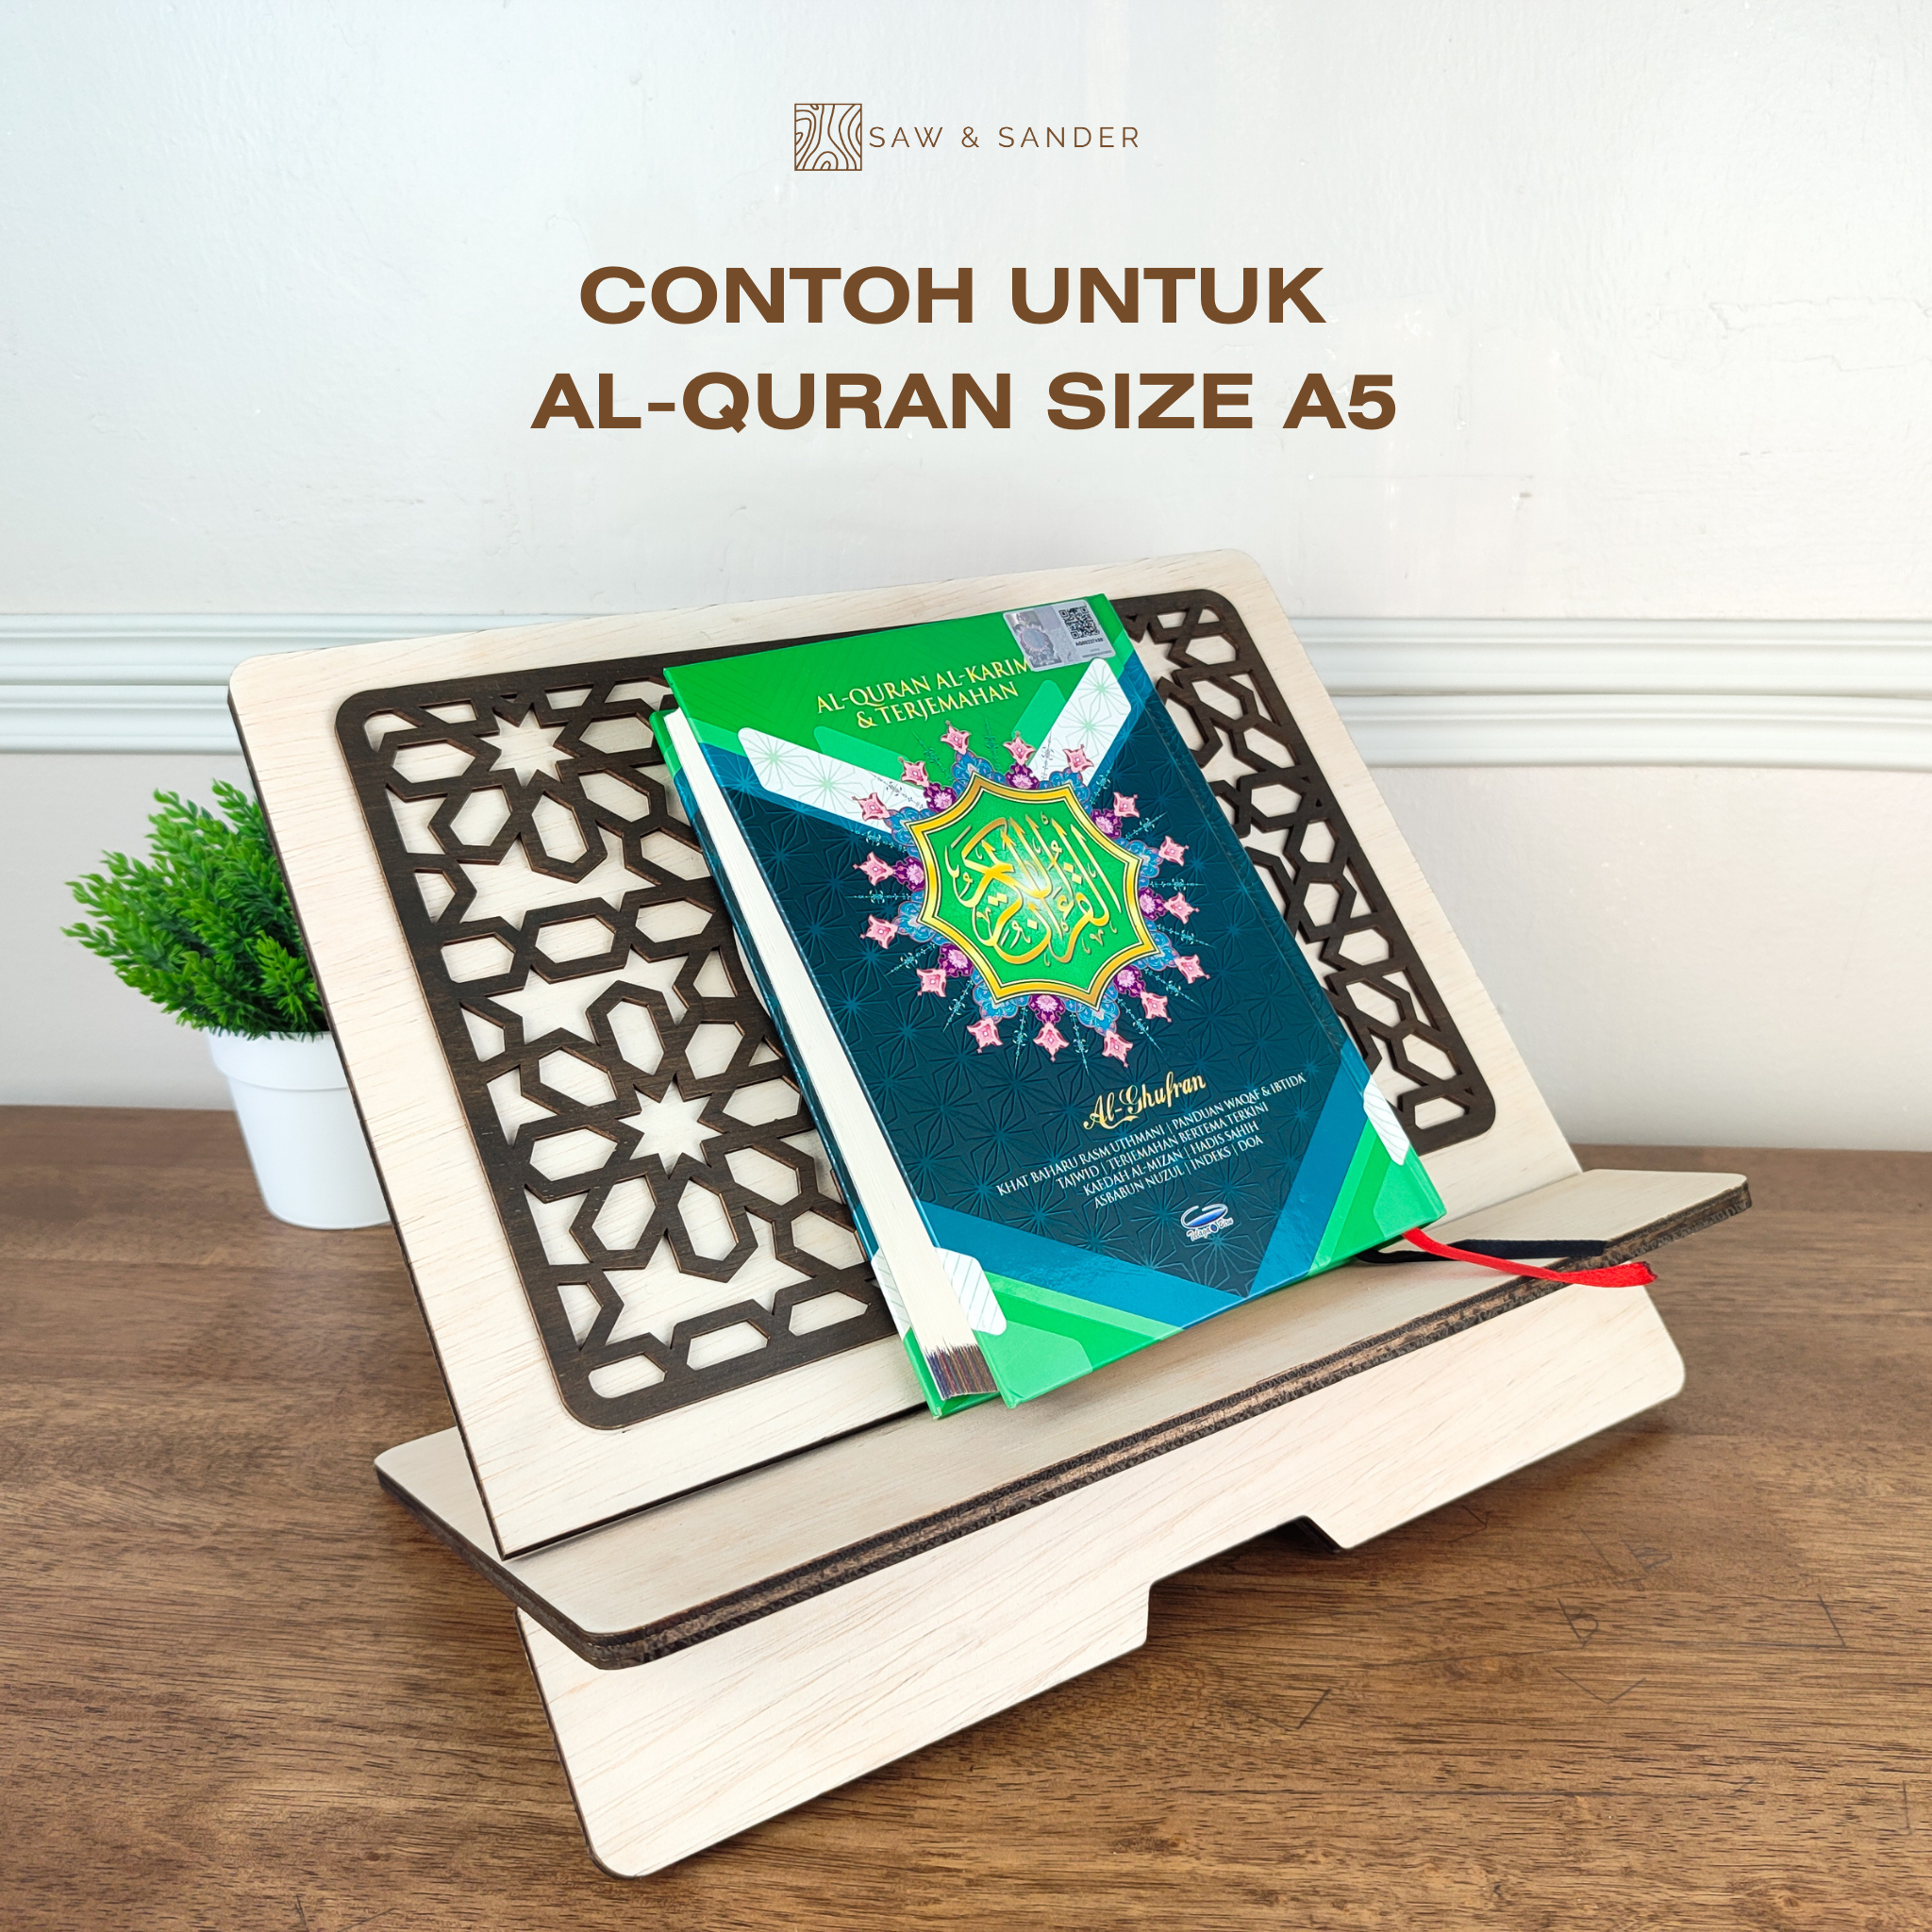 Quran size A5